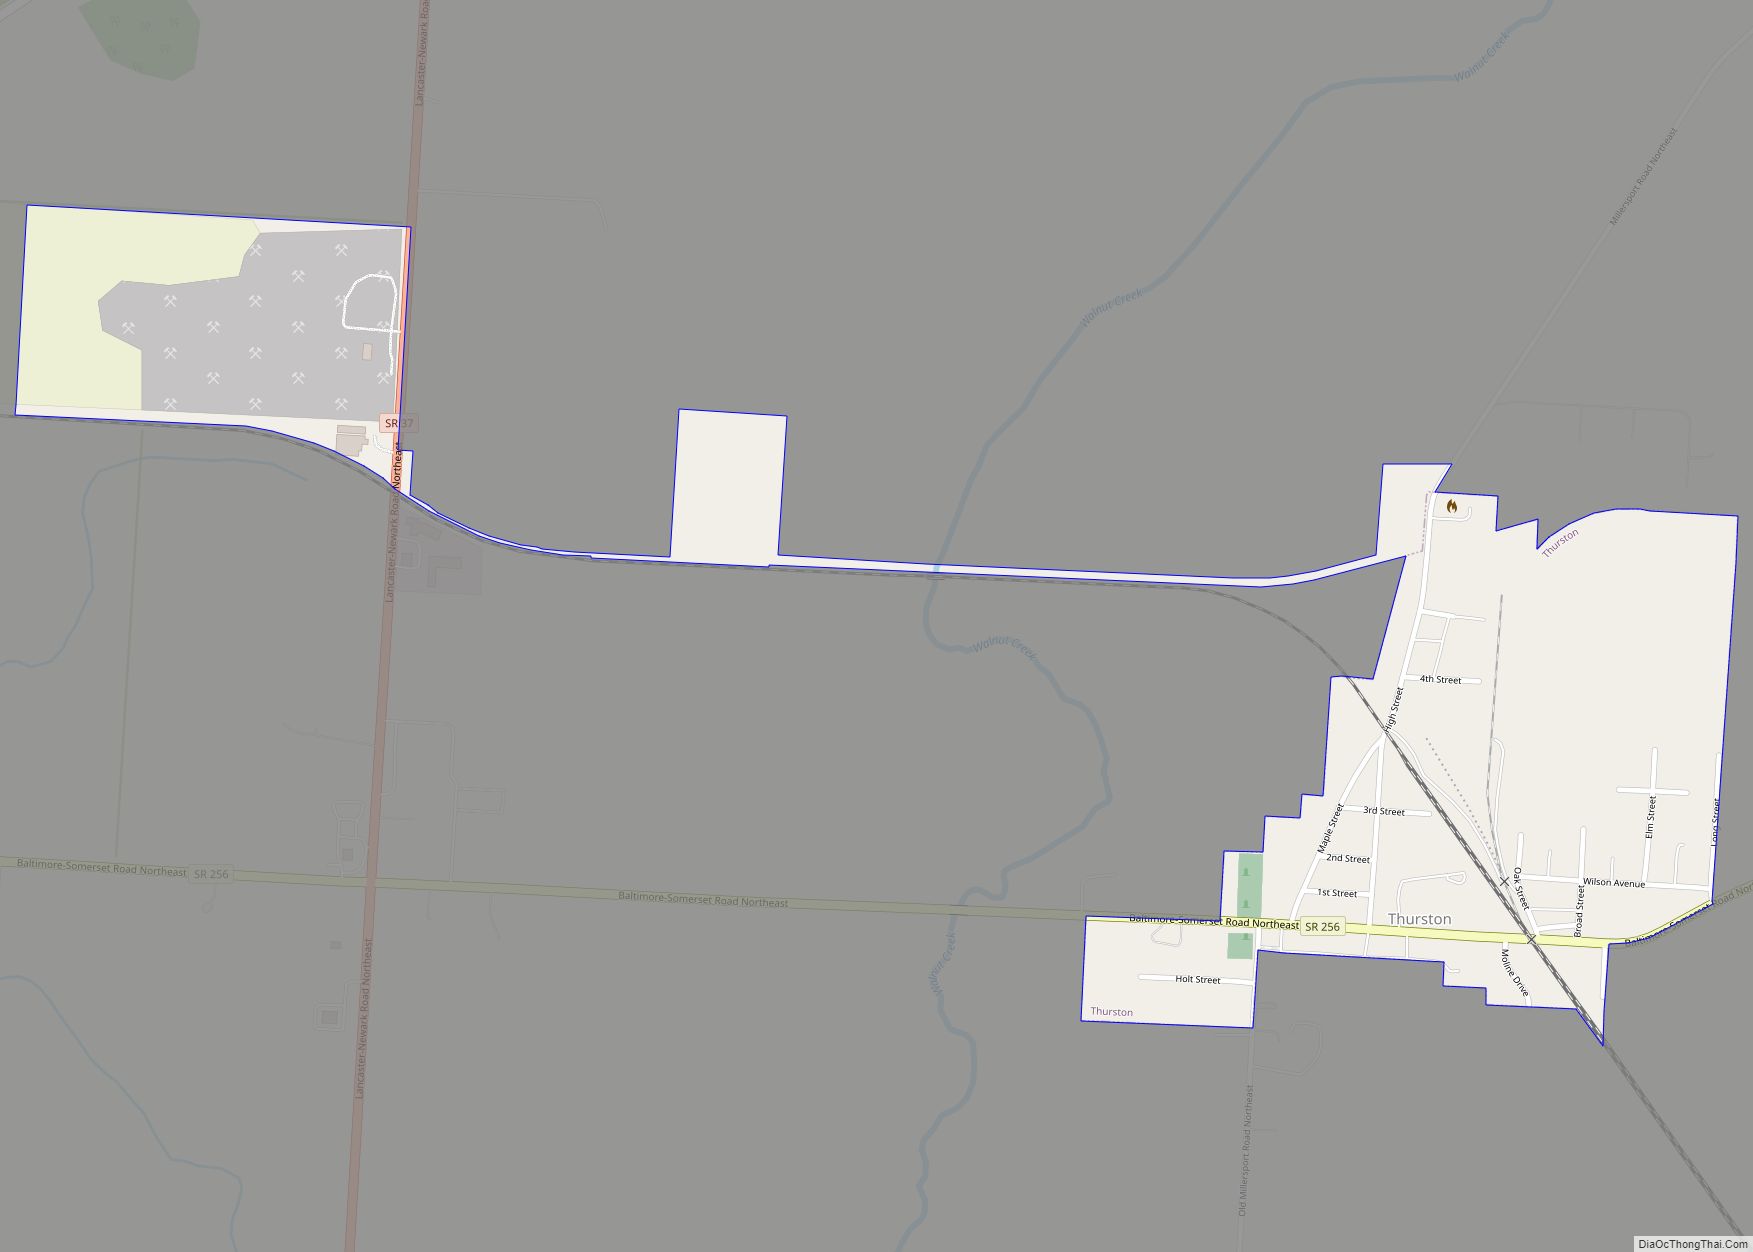 Map of Thurston village, Ohio